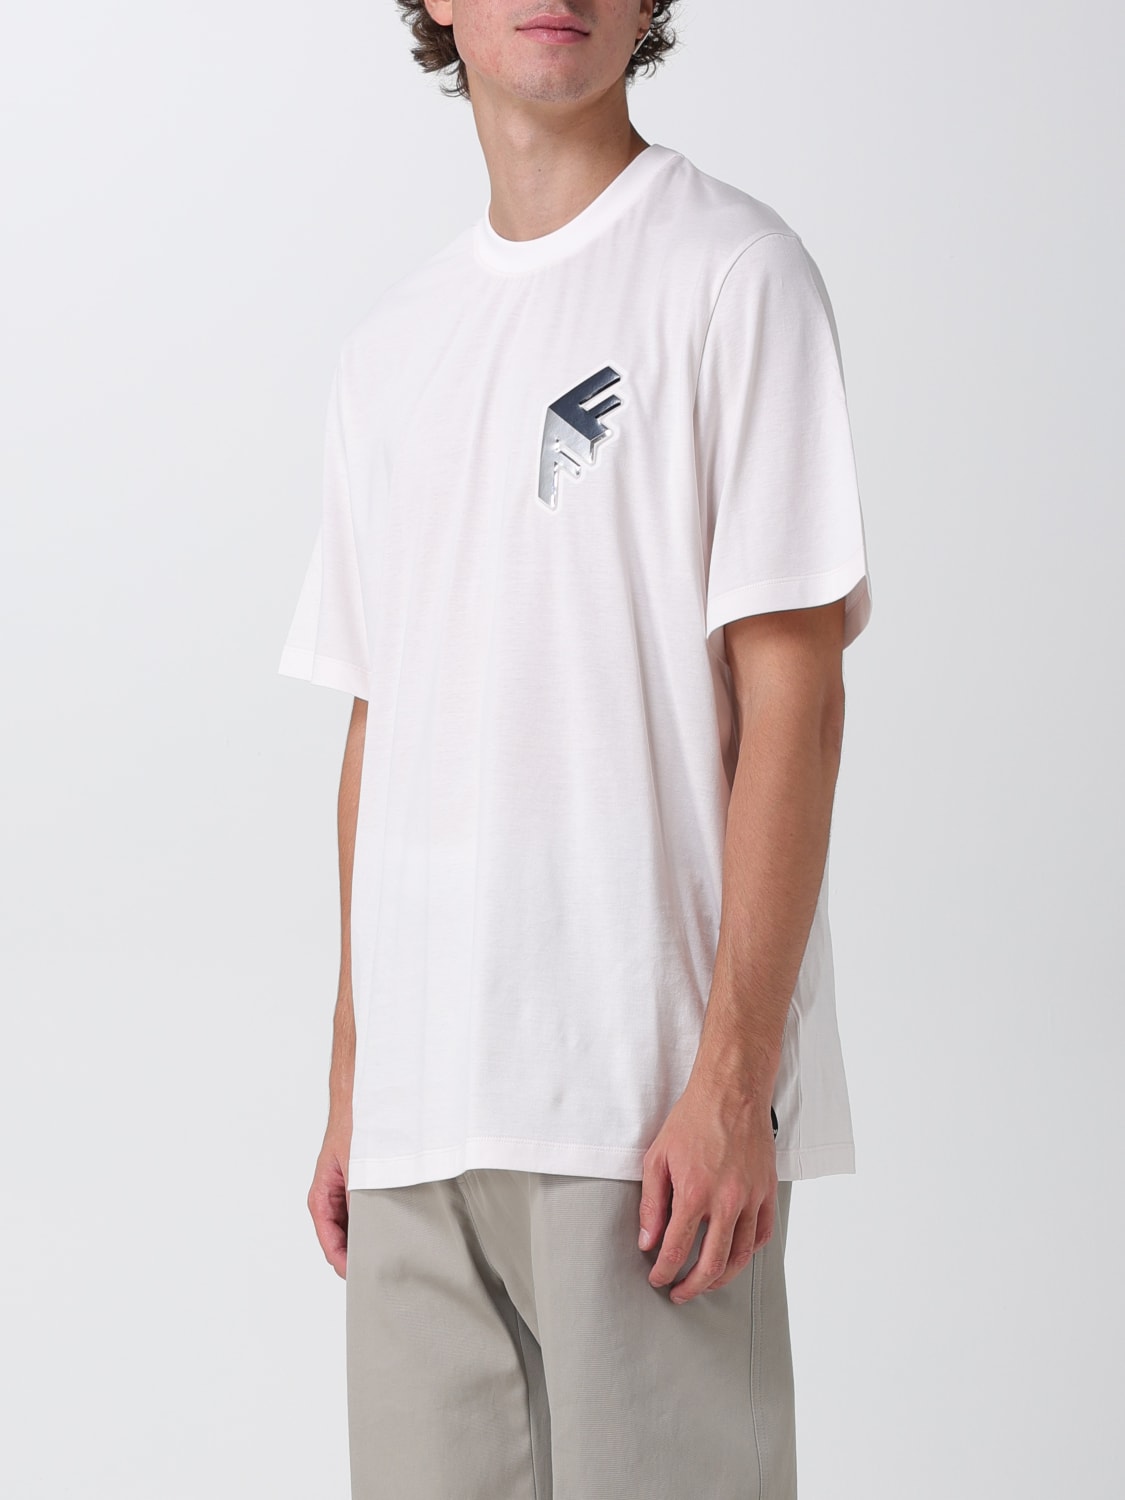 りーぬの商品一覧FENDI フェンディ Tシャツ 半袖 カットソー ロゴ ズッカ ホワイト 白